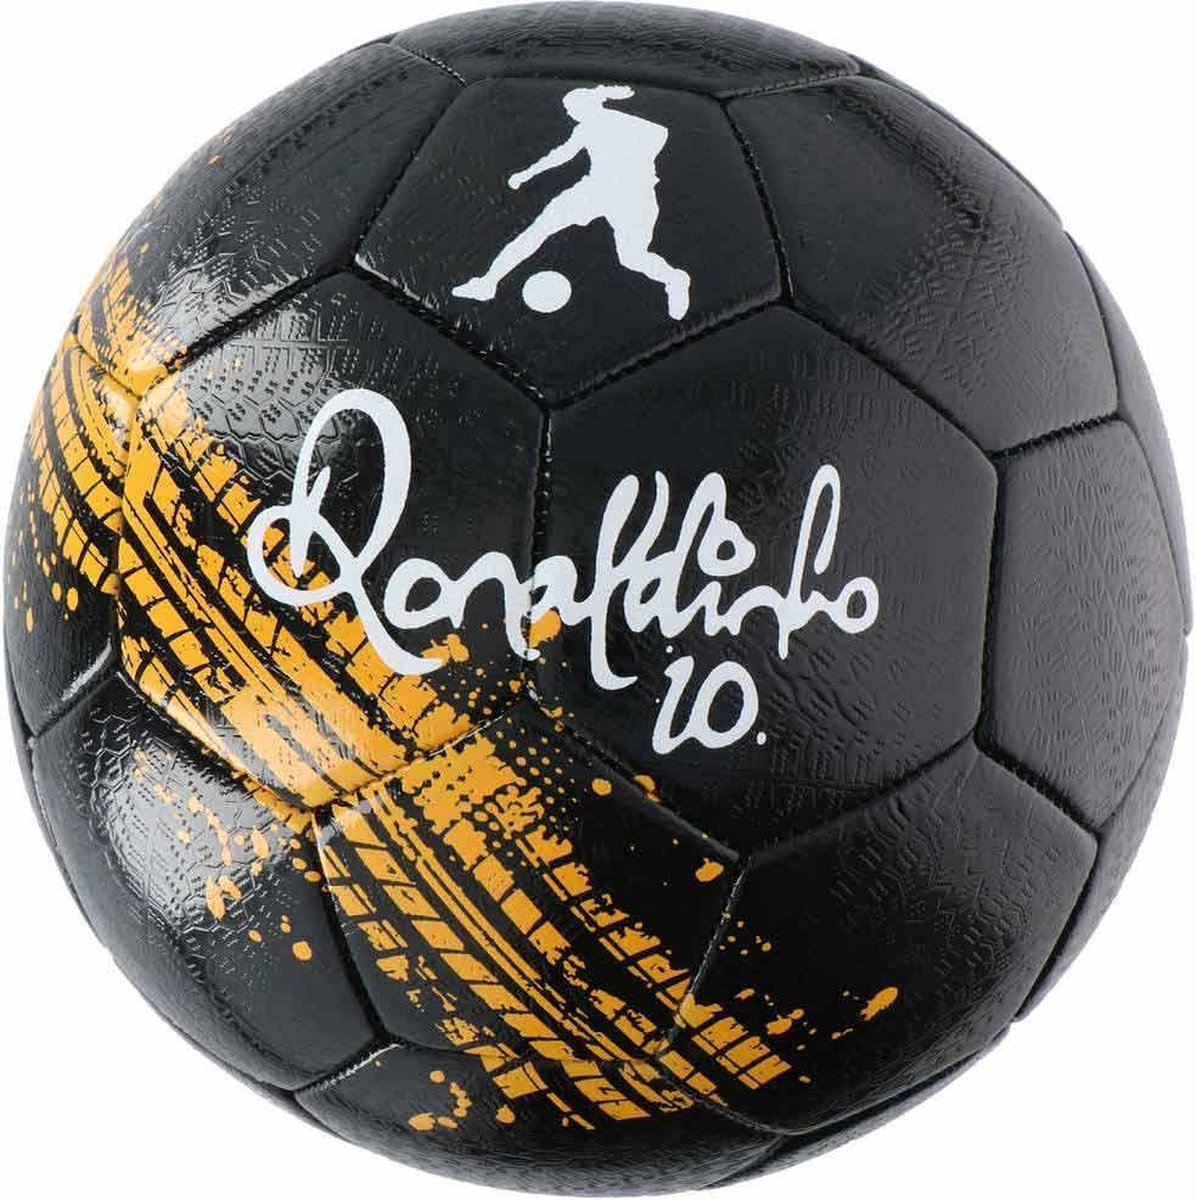 Voetbal-Straat Voetbal-Lifetime-Ronaldinho-Limited Edition - Straatvoetbal Maat 5 -2020 - Life-time